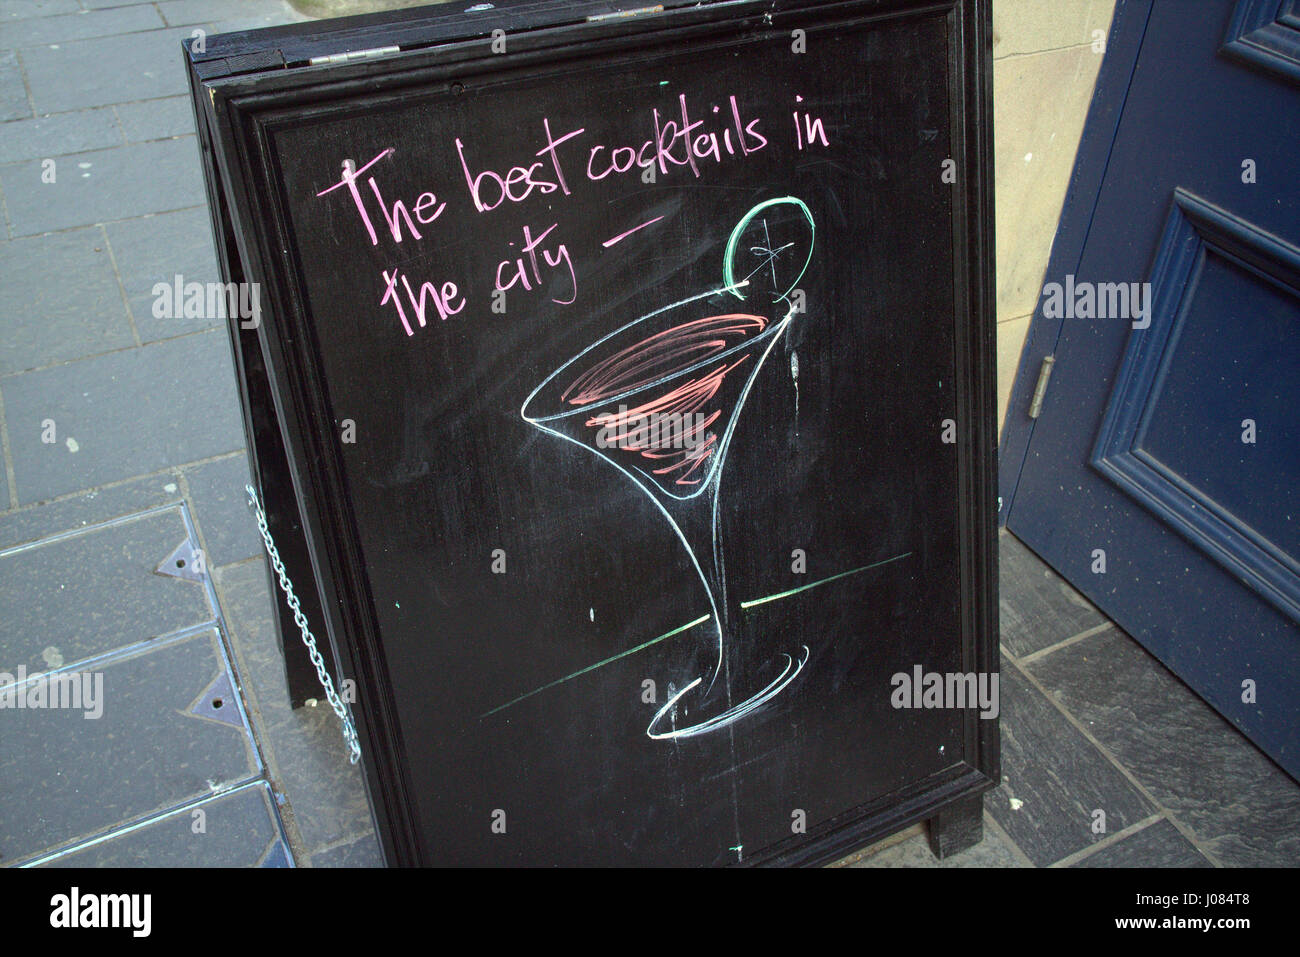 besten Cocktails der Stadt Alkohol Pub Restaurant Werbeschild Kreide Tafel Stockfoto